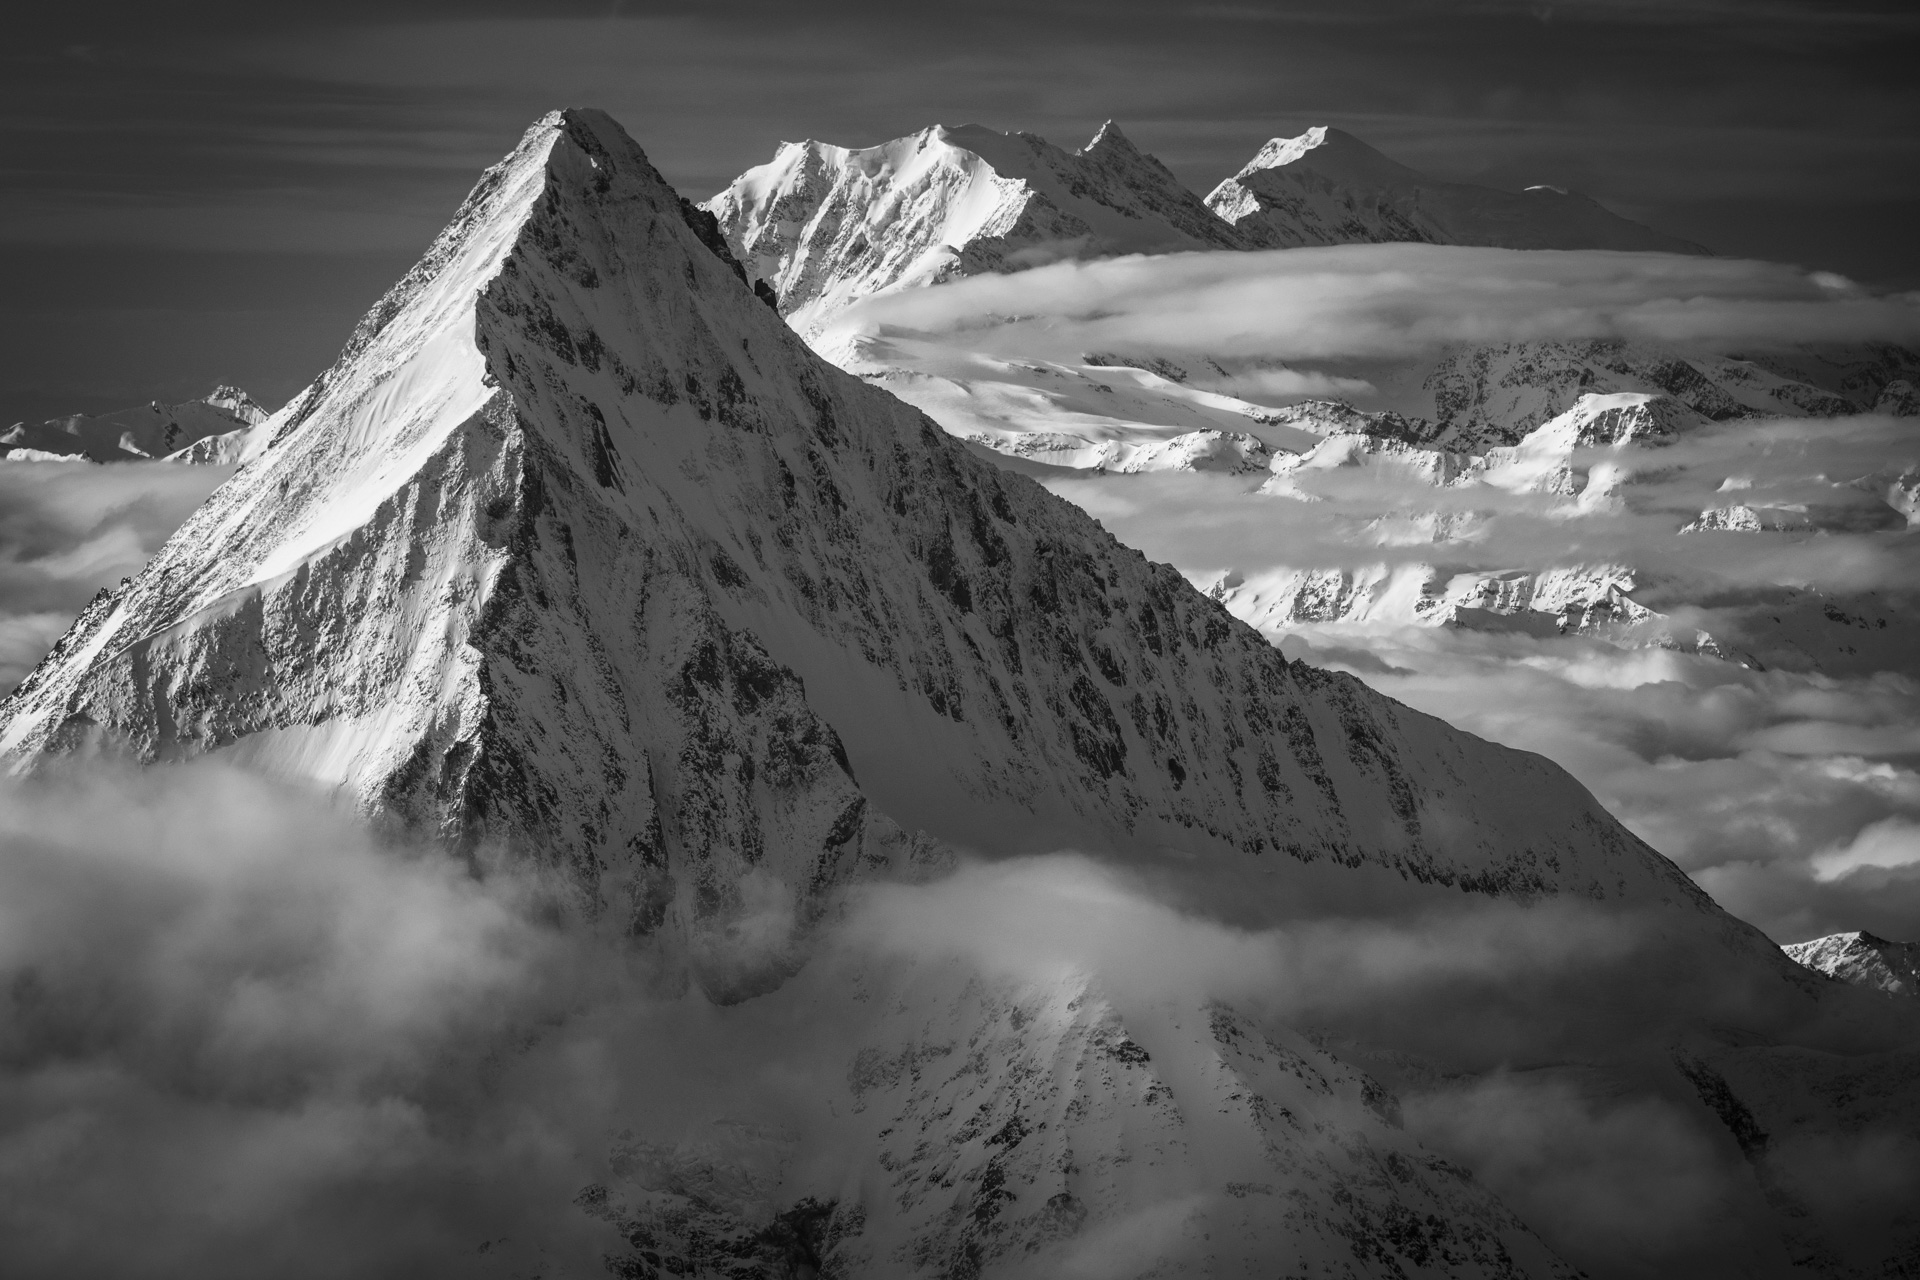 Bietschhorn - Photo noir et blanc du sommet du Loetschental et des montagnes de Saas Fee et Crans Montana dans les Alpes en Suisse